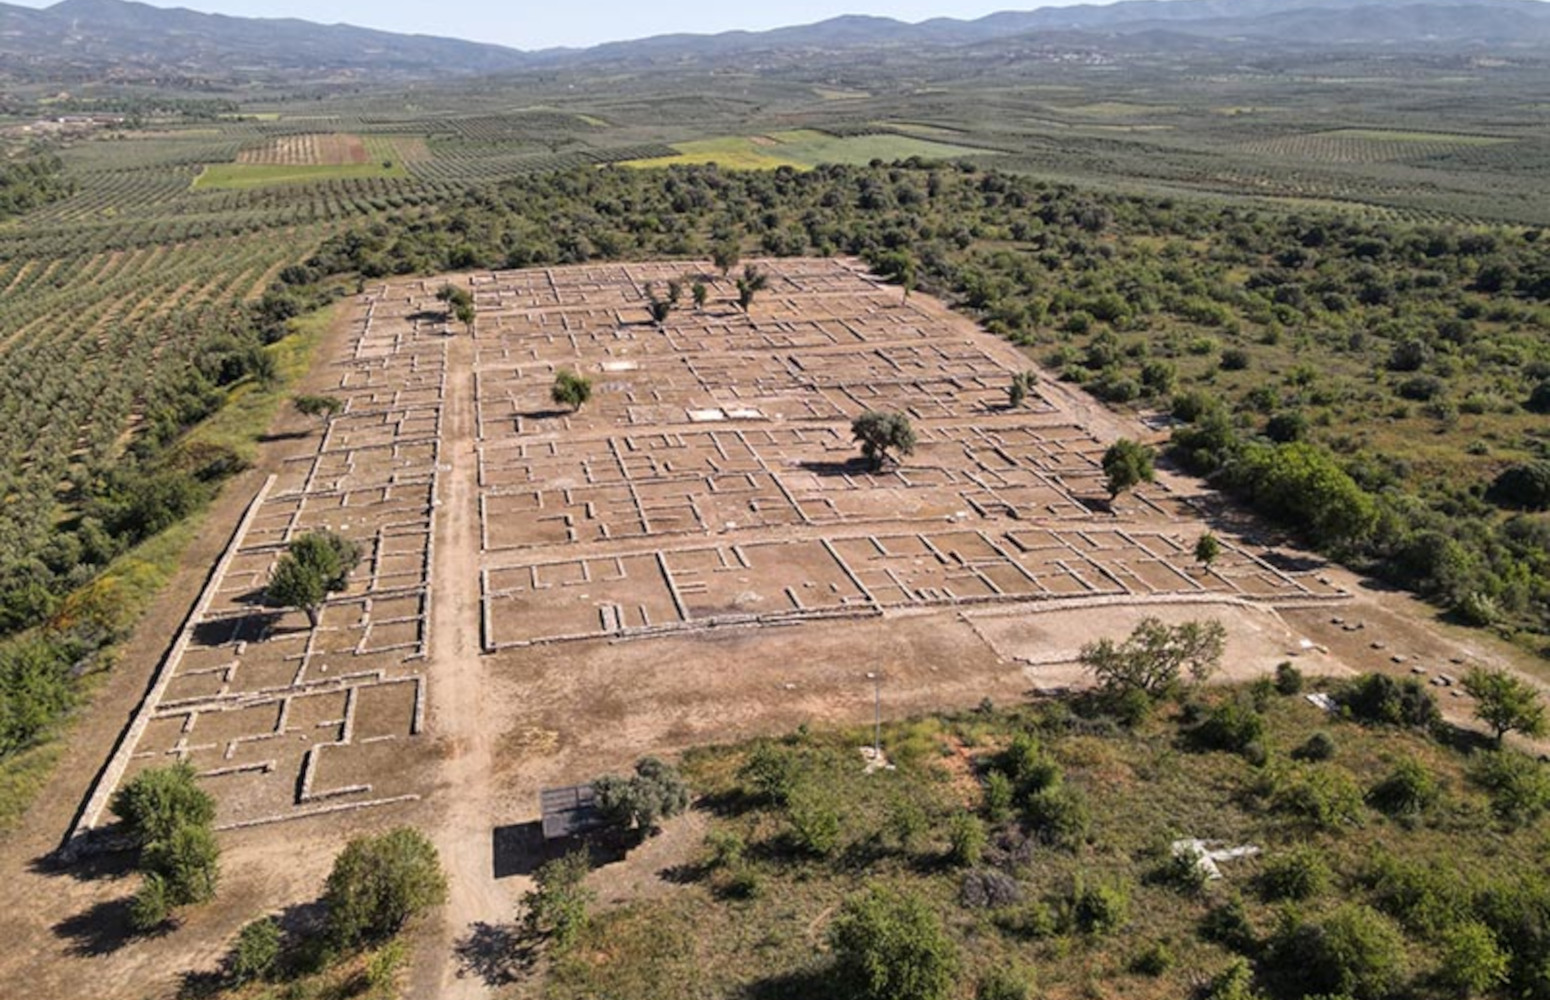 Αναβάθμιση του αρχαιολογικού χώρου της Ολύνθου – Τι περιλαμβάνει ο σχεδιασμός